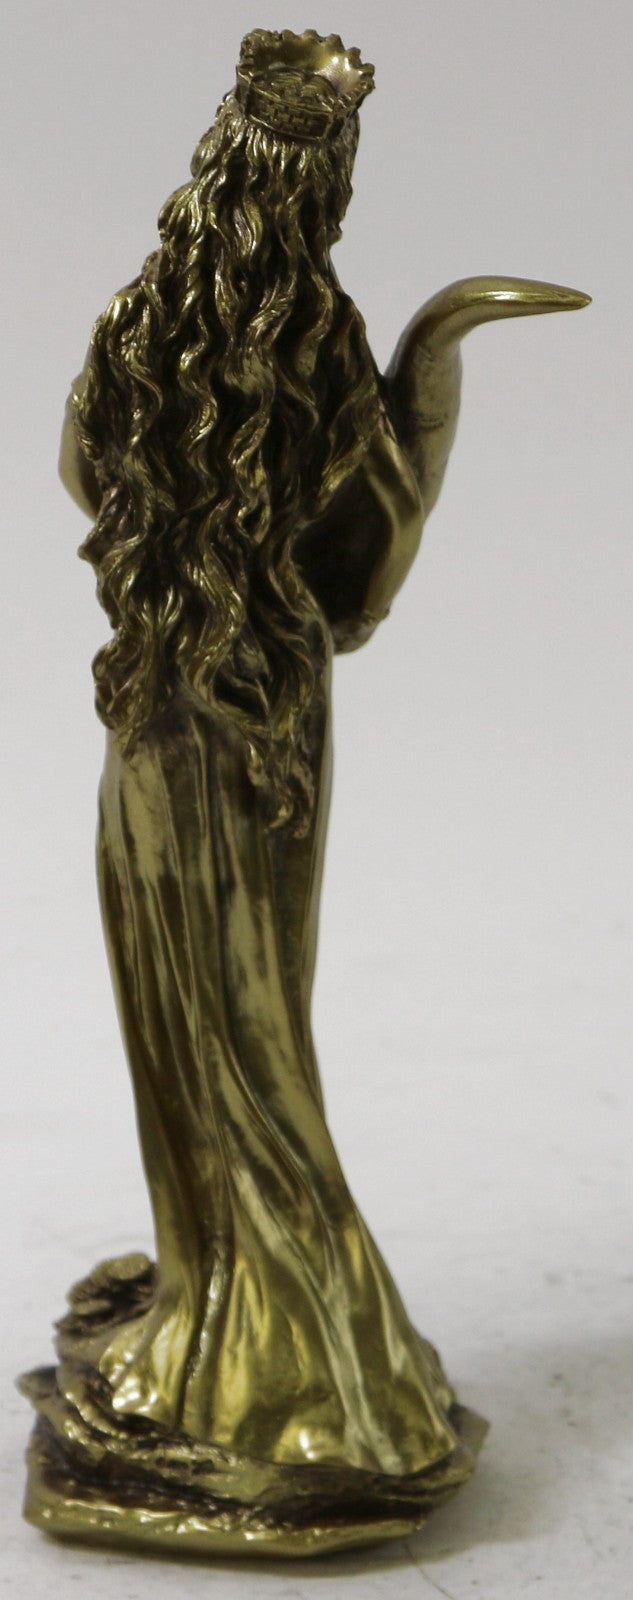 Goddess of Money Luck Statue Sculpture Figure Bronze Finish Cold Cast Art